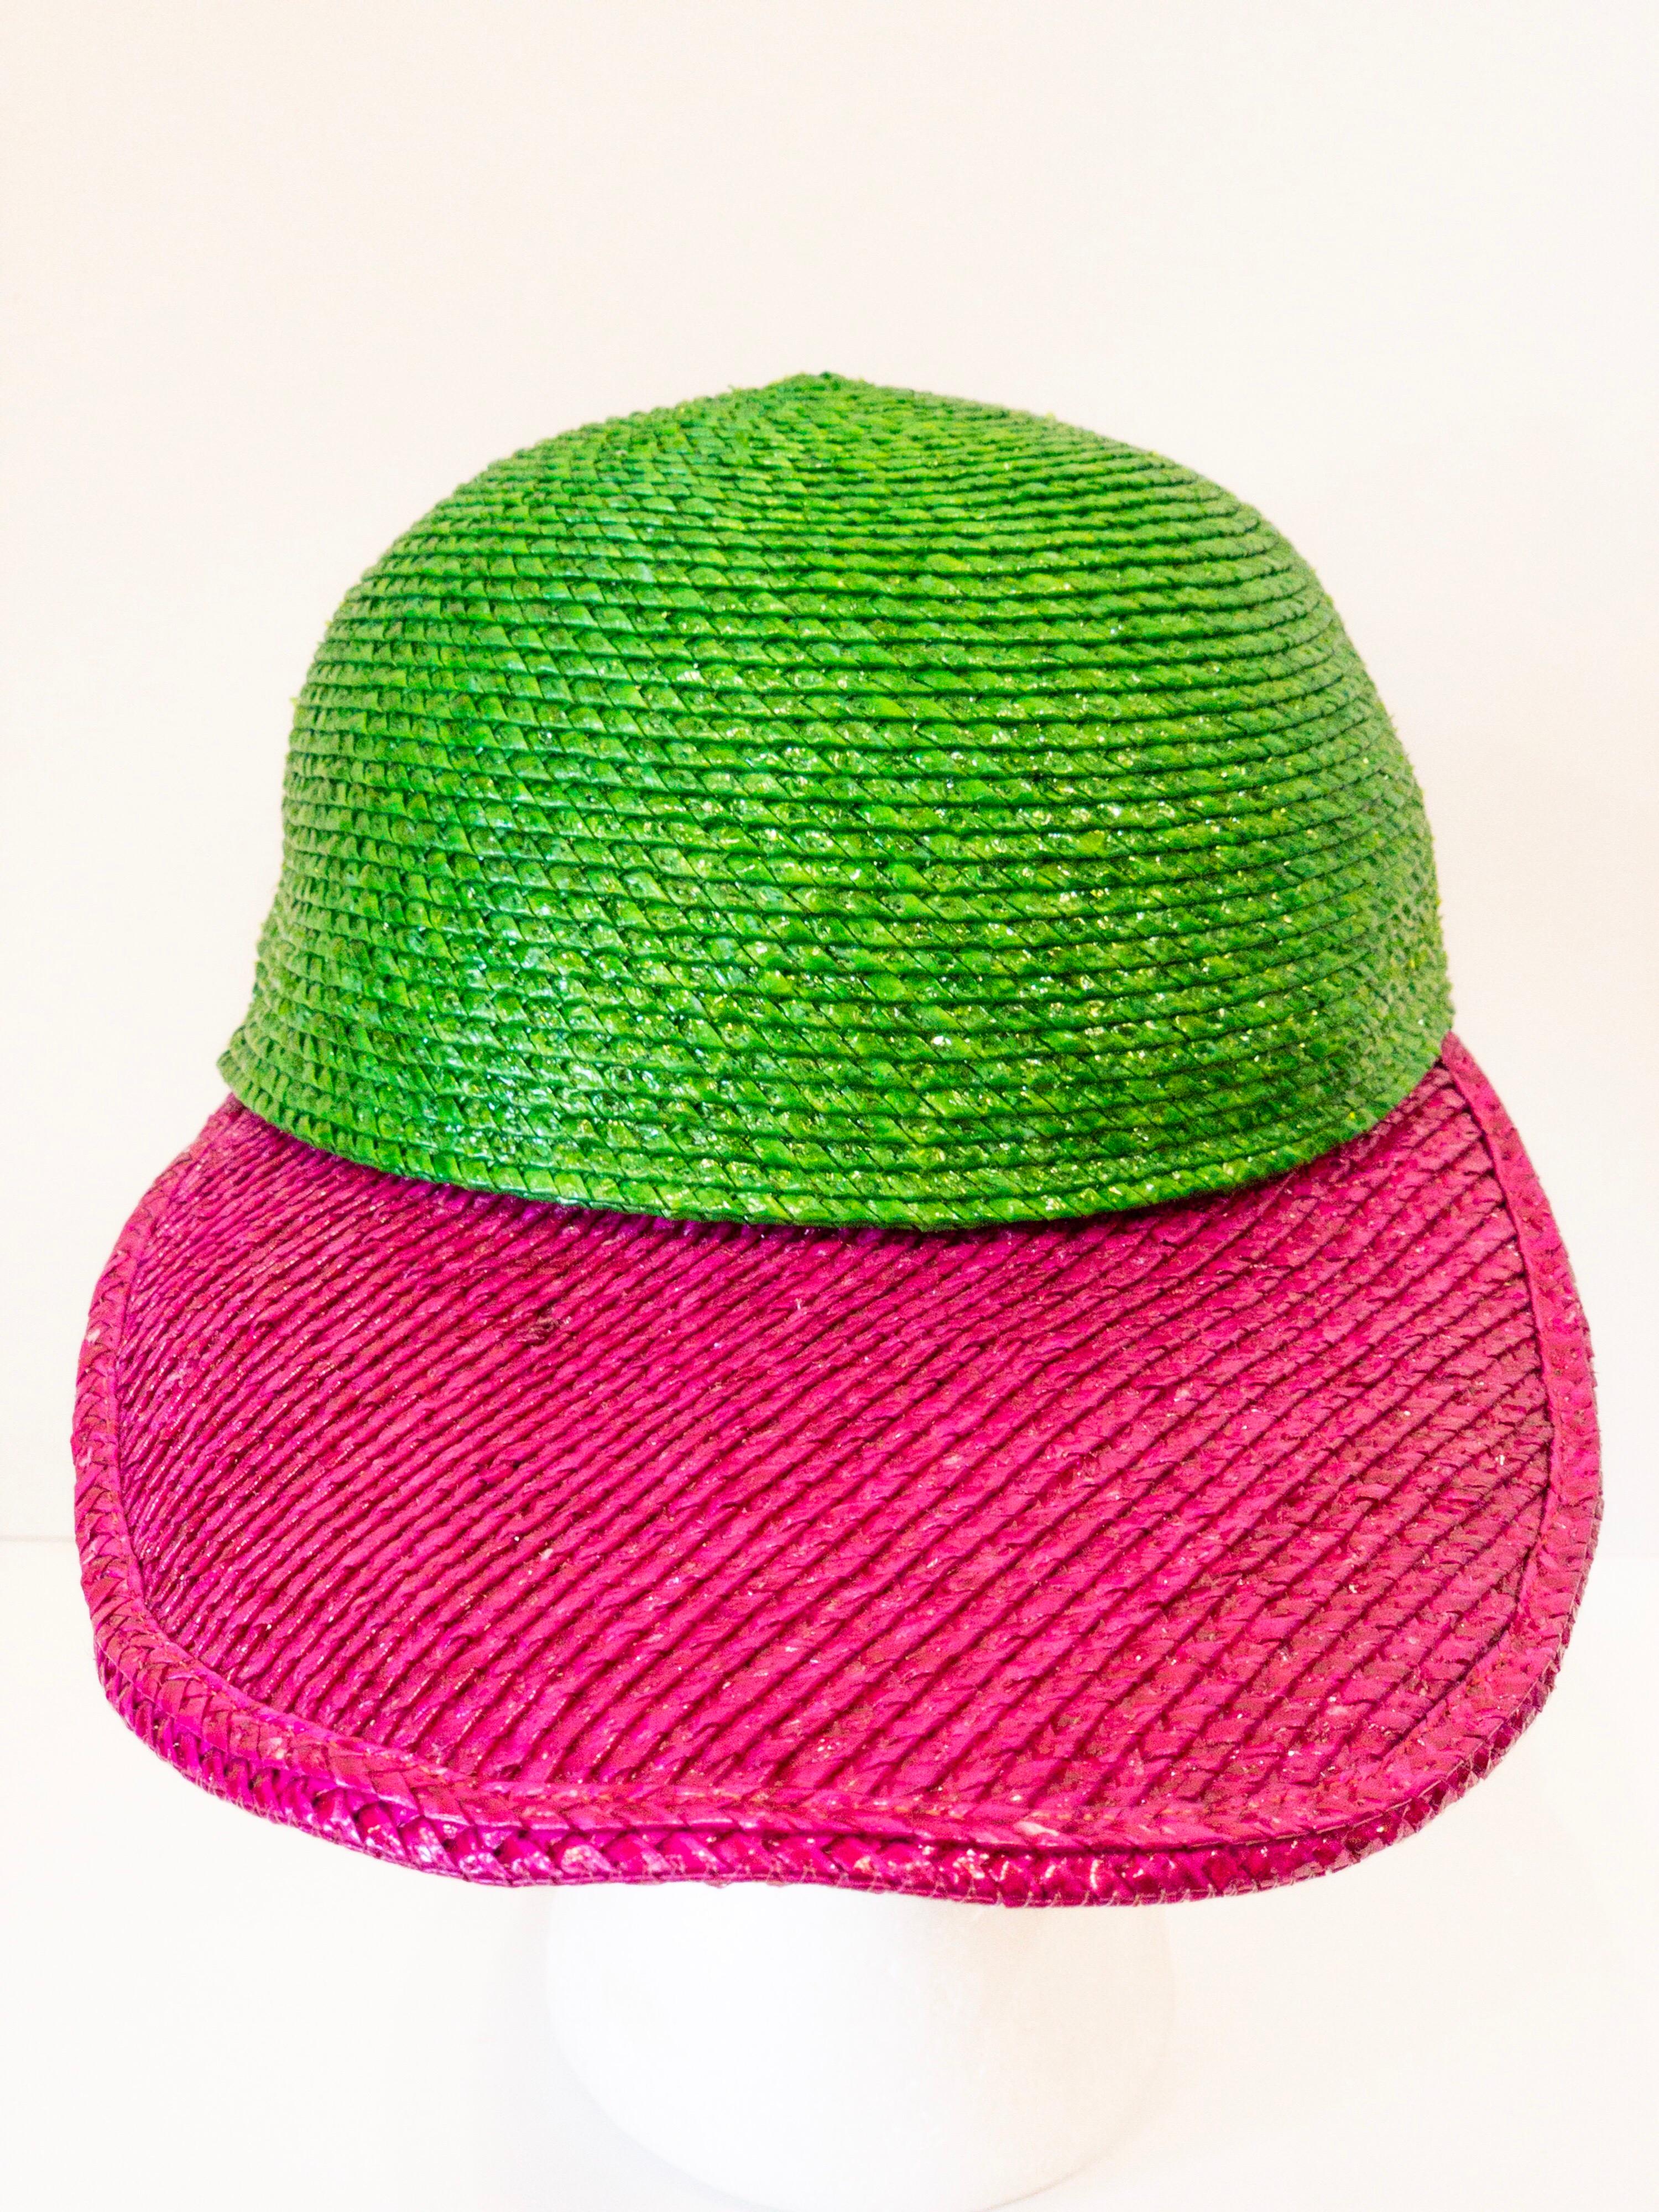 Ce chapeau est au service de toutes les vibrations des années 80 ! Datant des années 1980, ce chapeau de paille brillant YSL présente une calotte contrastée vert vibrant et un large bord rose foncé. Parfait pour le bord de la piscine ou pour